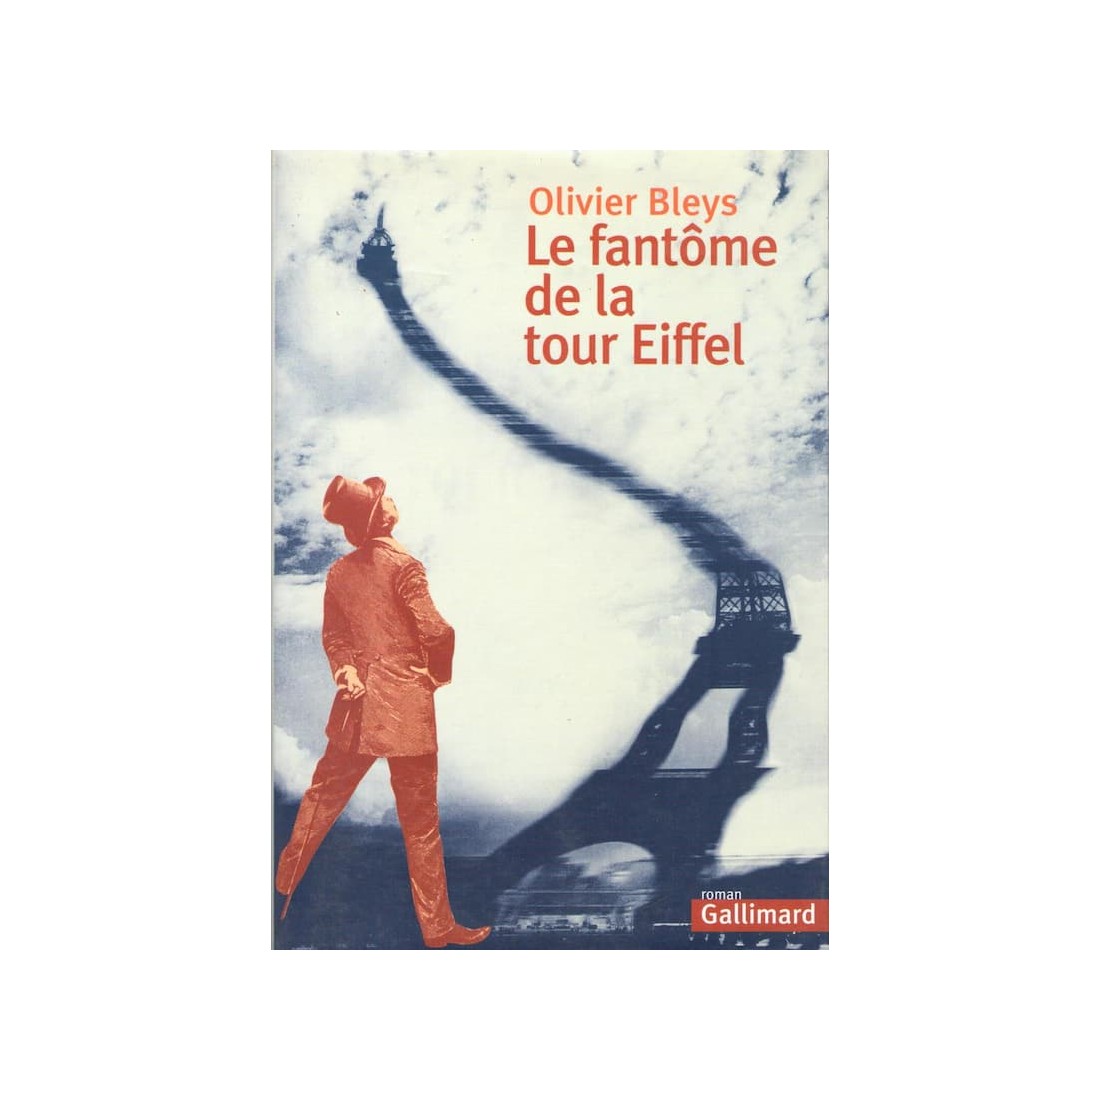 Le fantôme de la tour Eiffel - Roman de Olivier Bleys - Ocazlivres.com